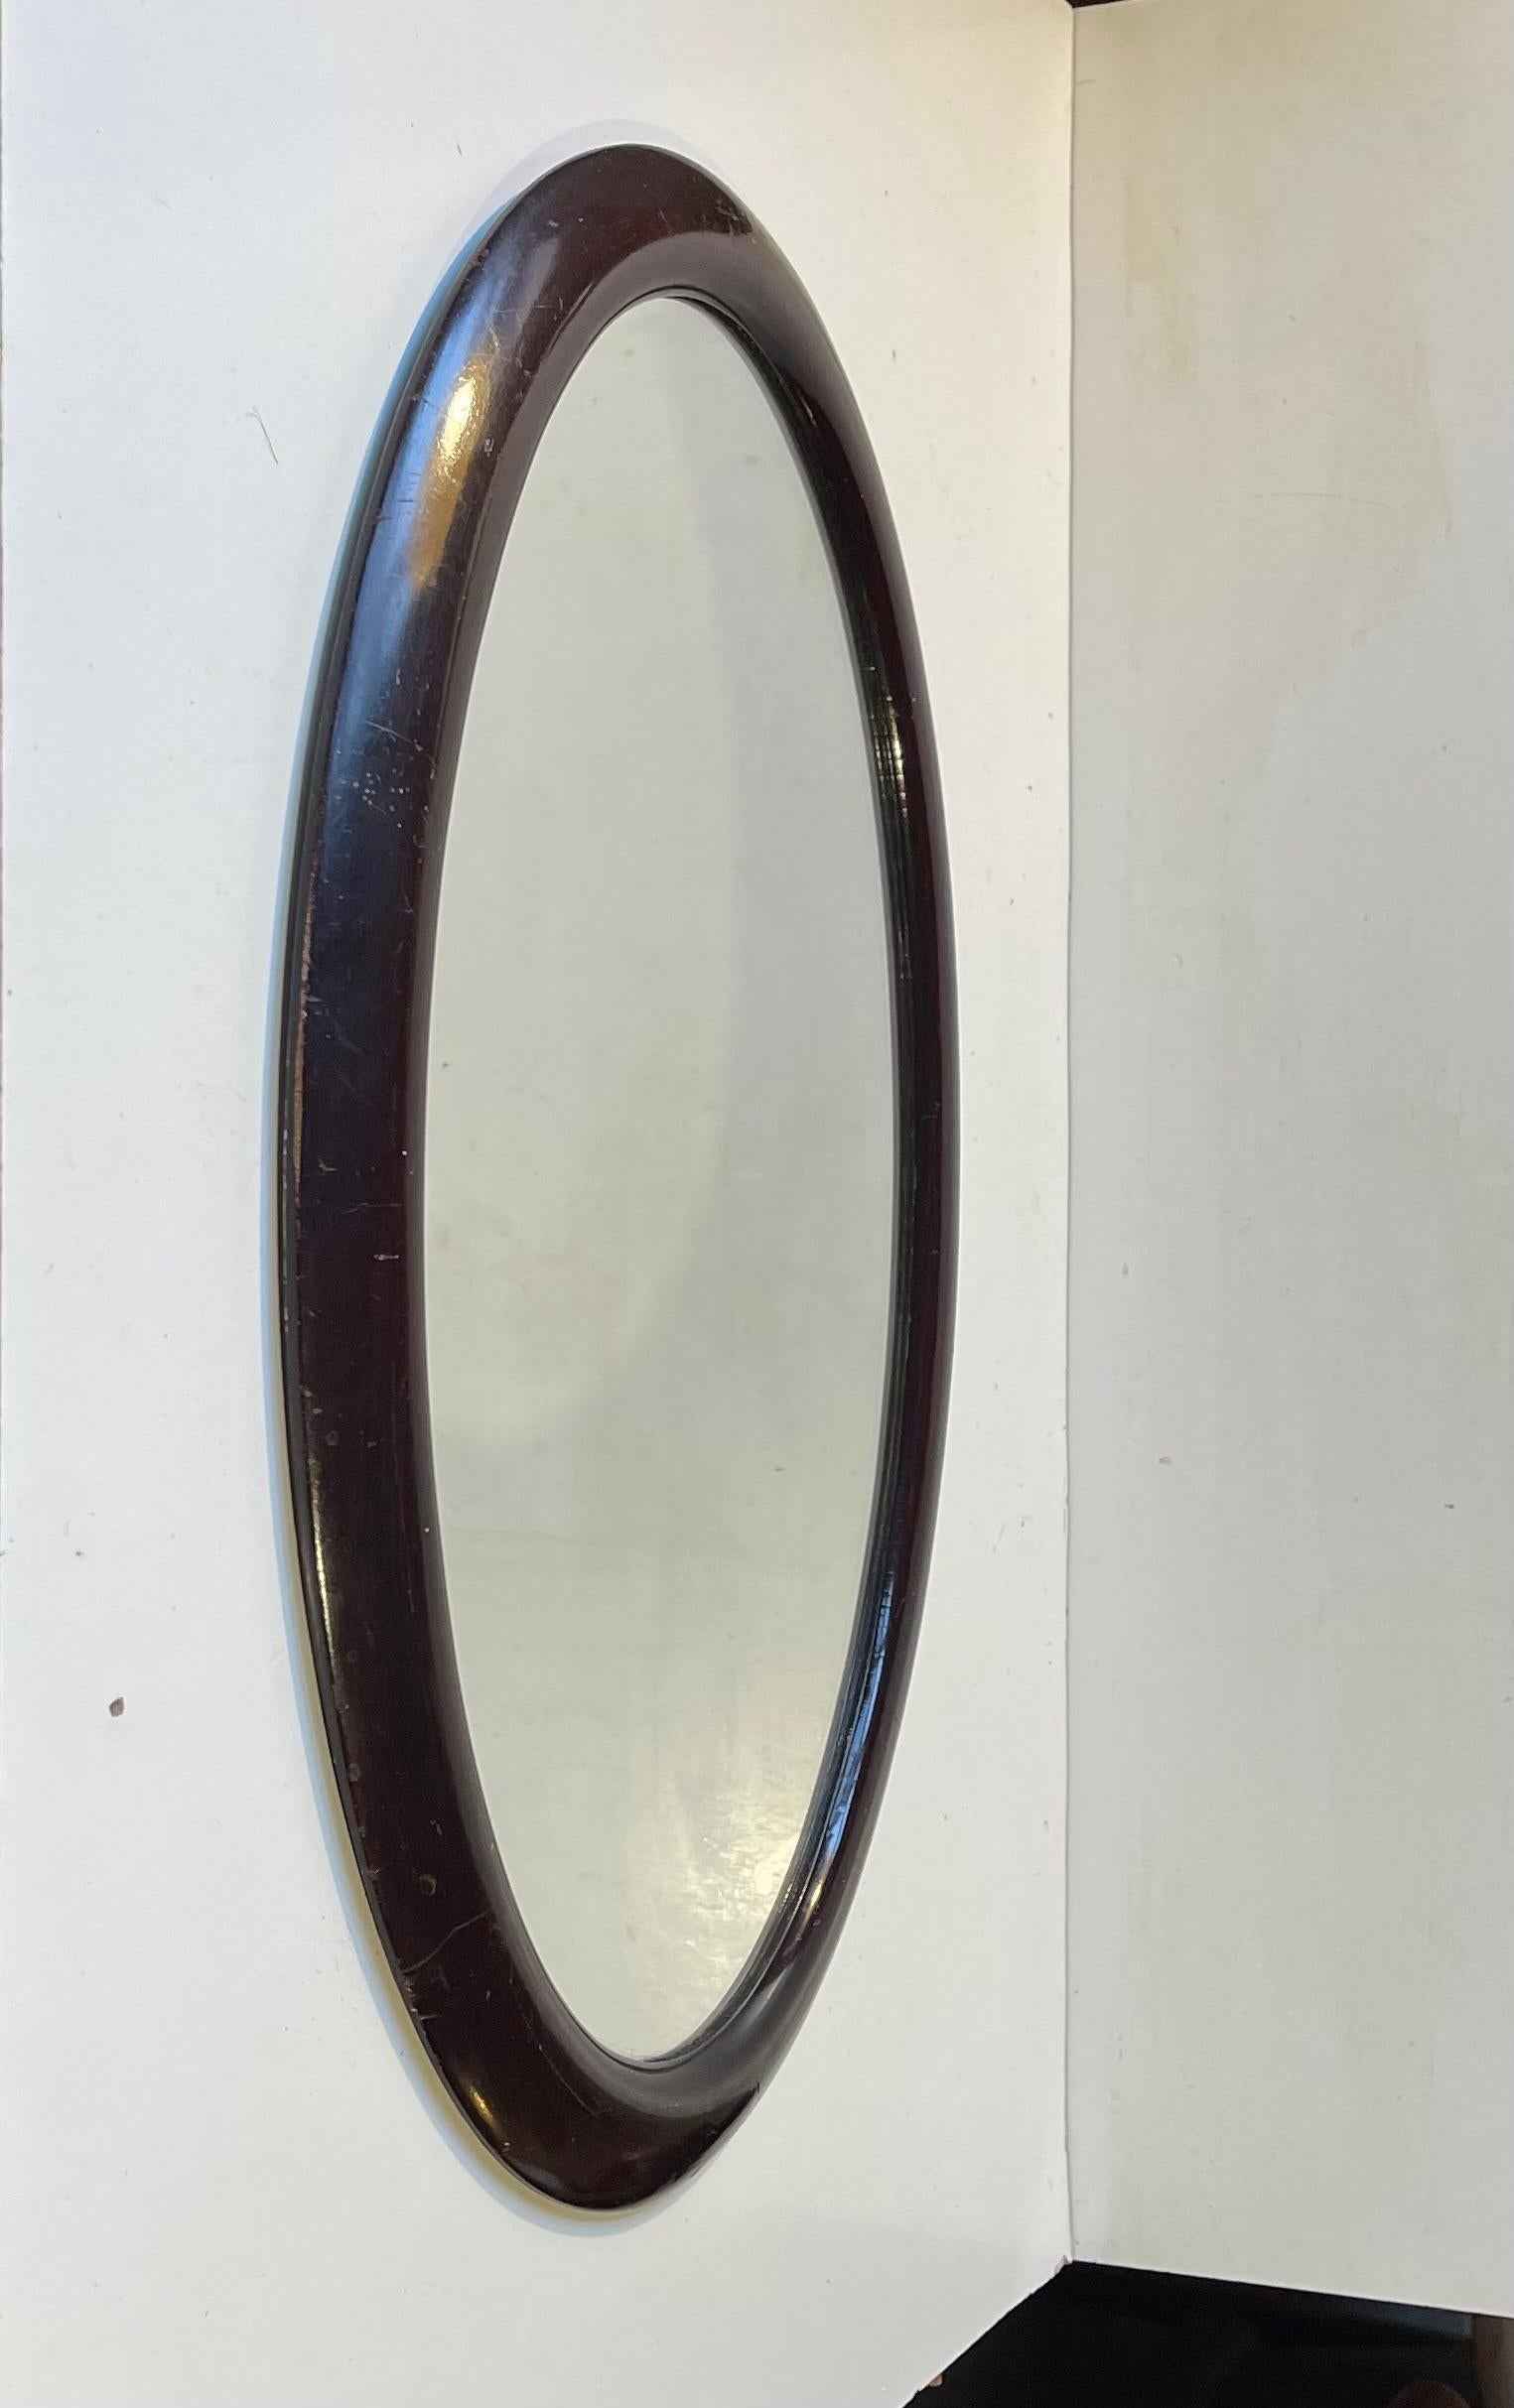 Ein Wandspiegel aus Bugholz in gebeizter Eiche (dunkler Mahagoni-Ton). Klare Kurven und einfache Linien in einer ovalen Form. Hergestellt von einem dänischen Möbelschreiner in den frühen 1920er Jahren. Abmessungen: 49x33x3 cm, gerahmt.